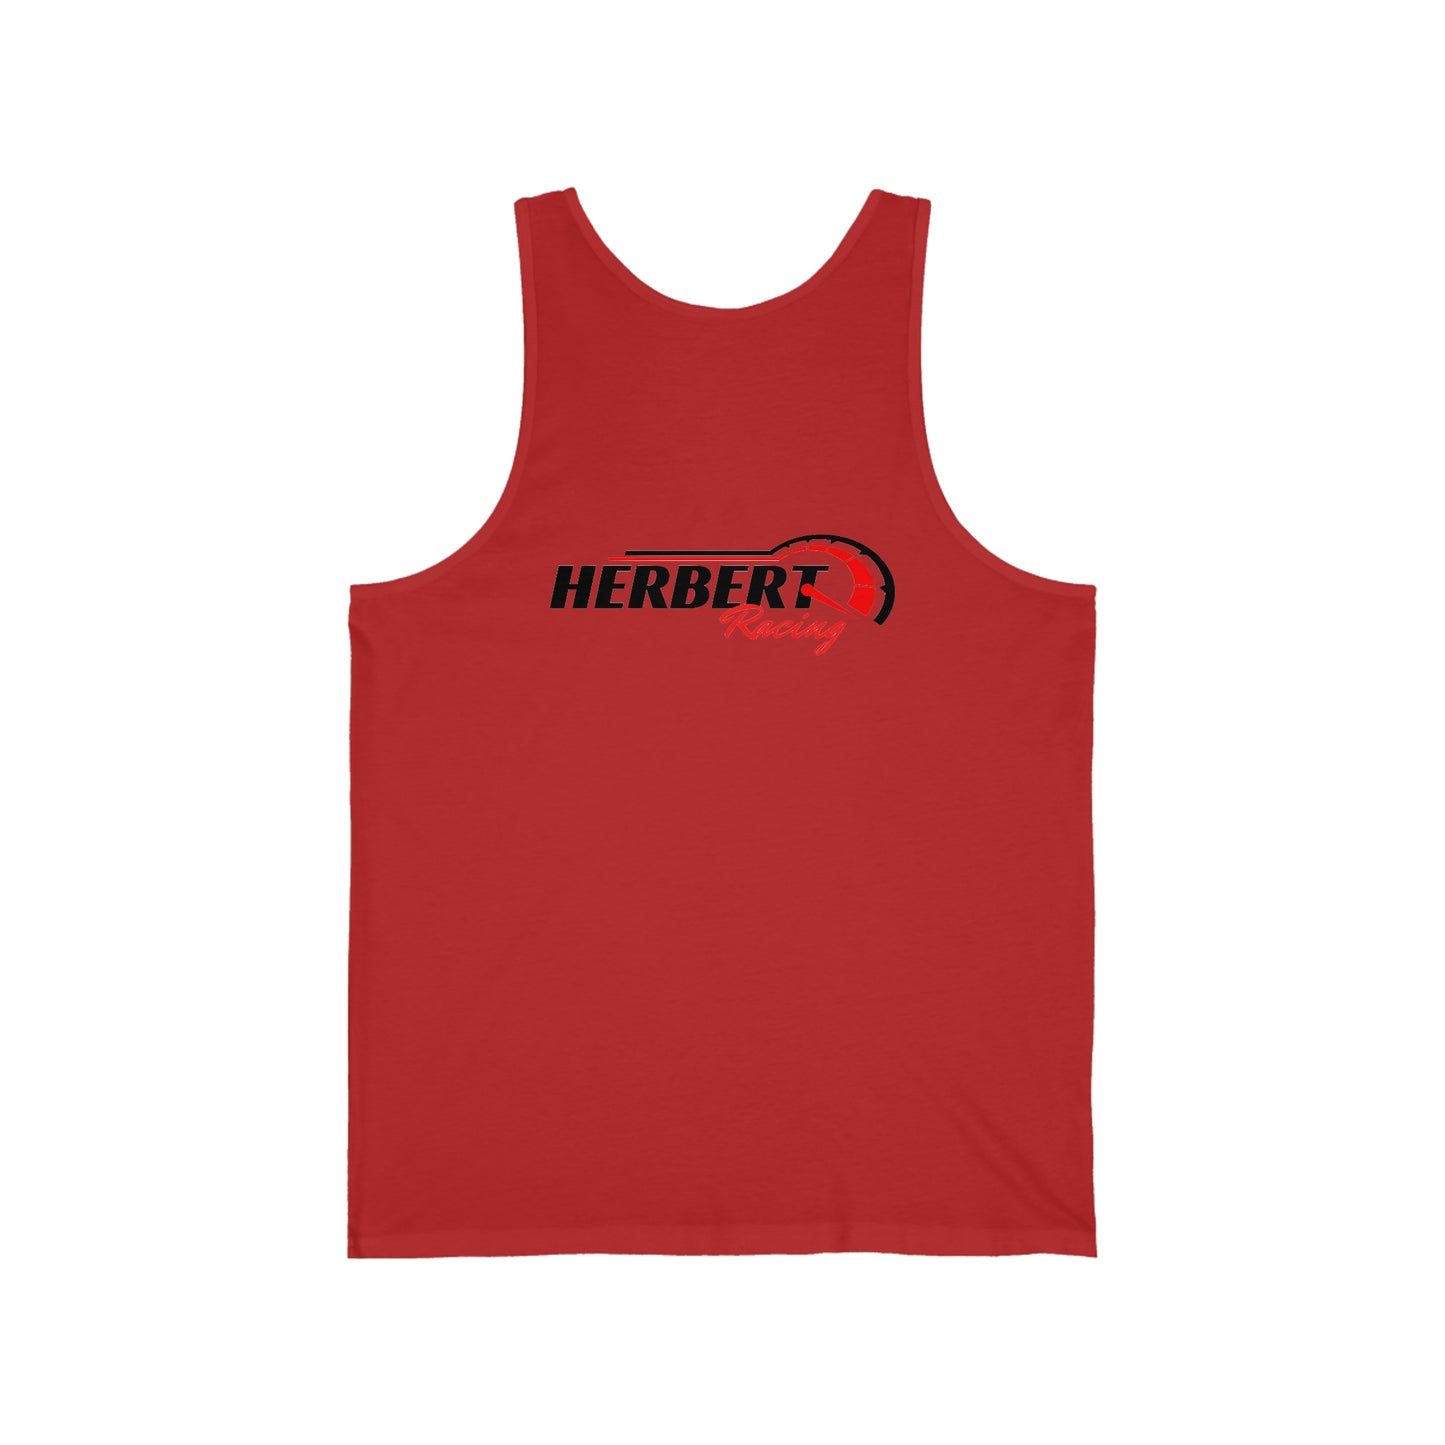 Herbert Racing Unisex Jersey Tank